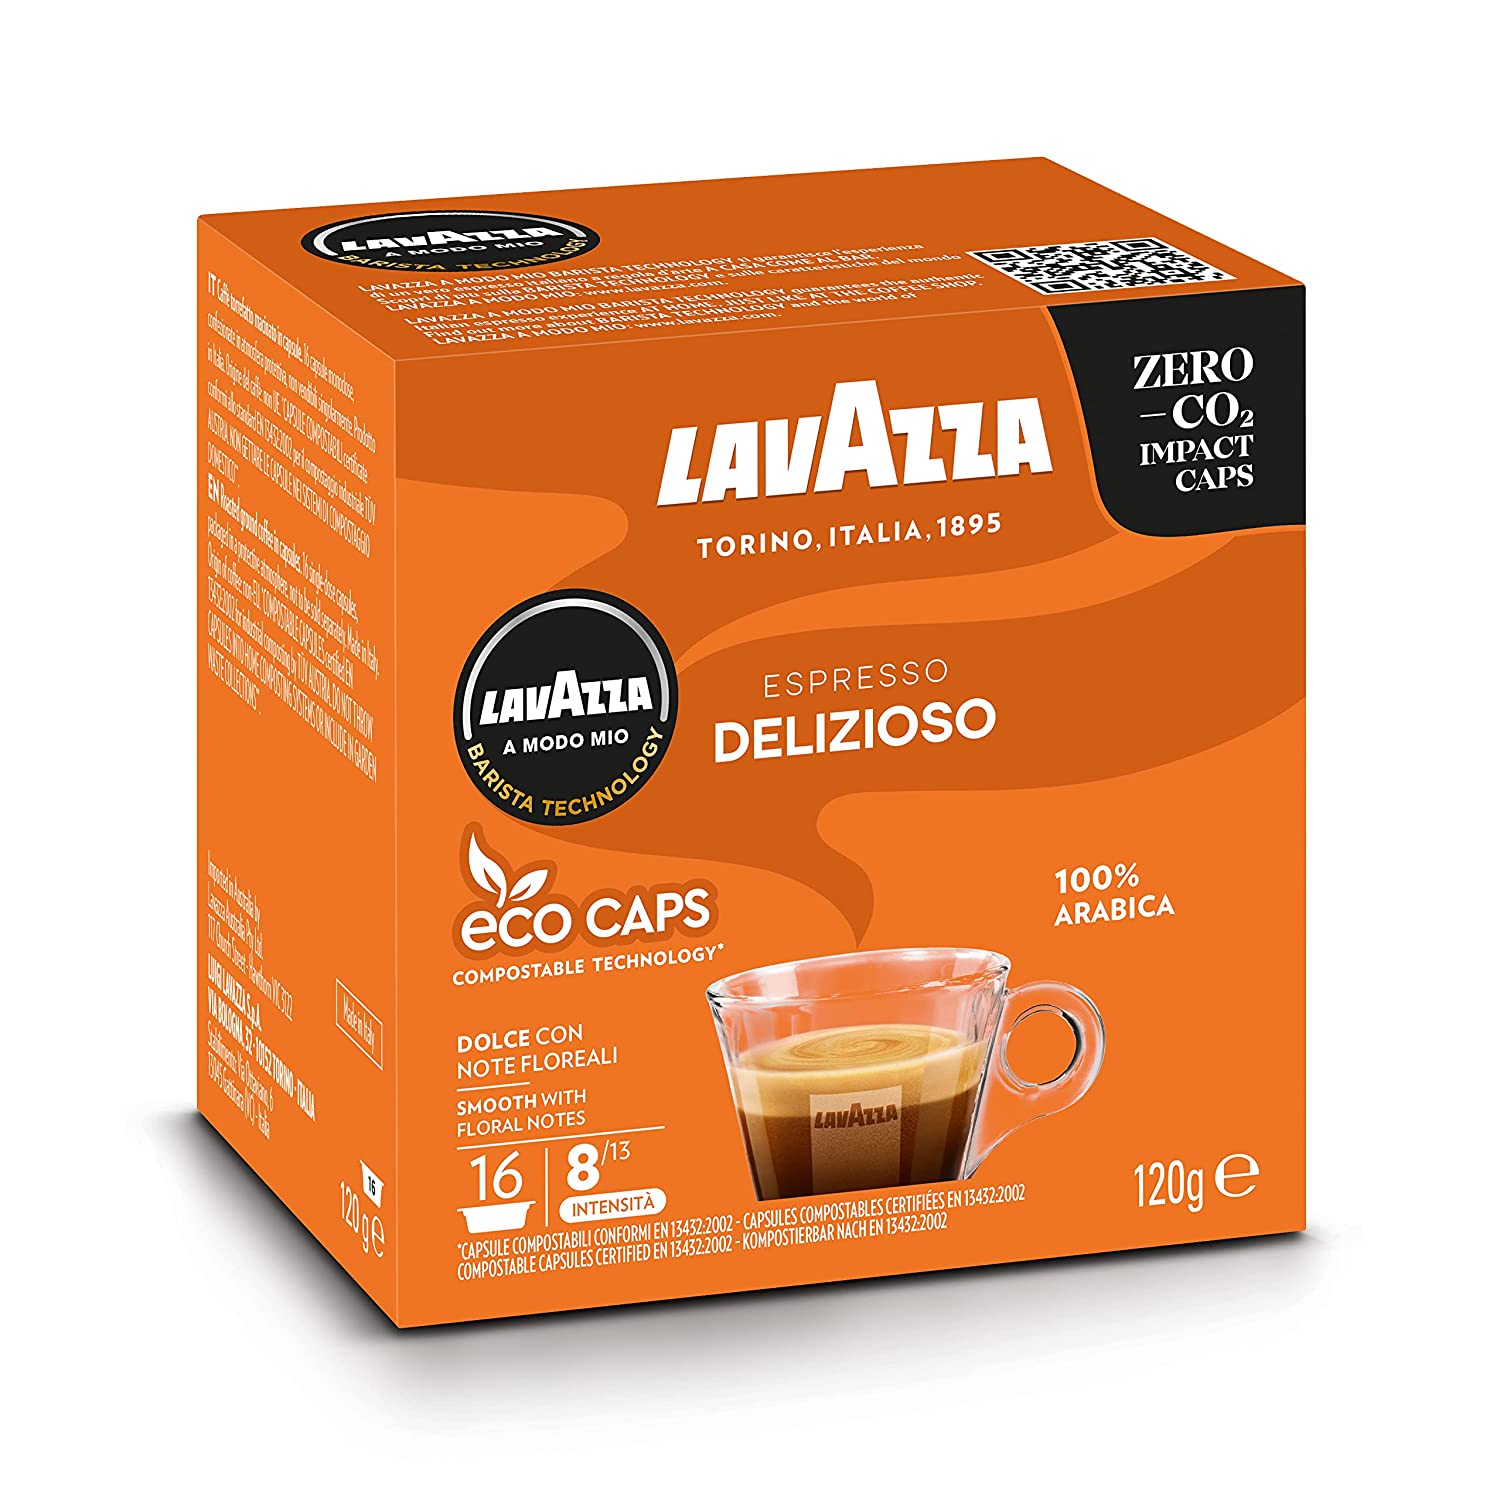 Lavazza 16 A Modo Mio Eco Caps Kapseln, kompostierbar, Kaffee Espresso Delizioso, 1 x 16er Pack (120 g)